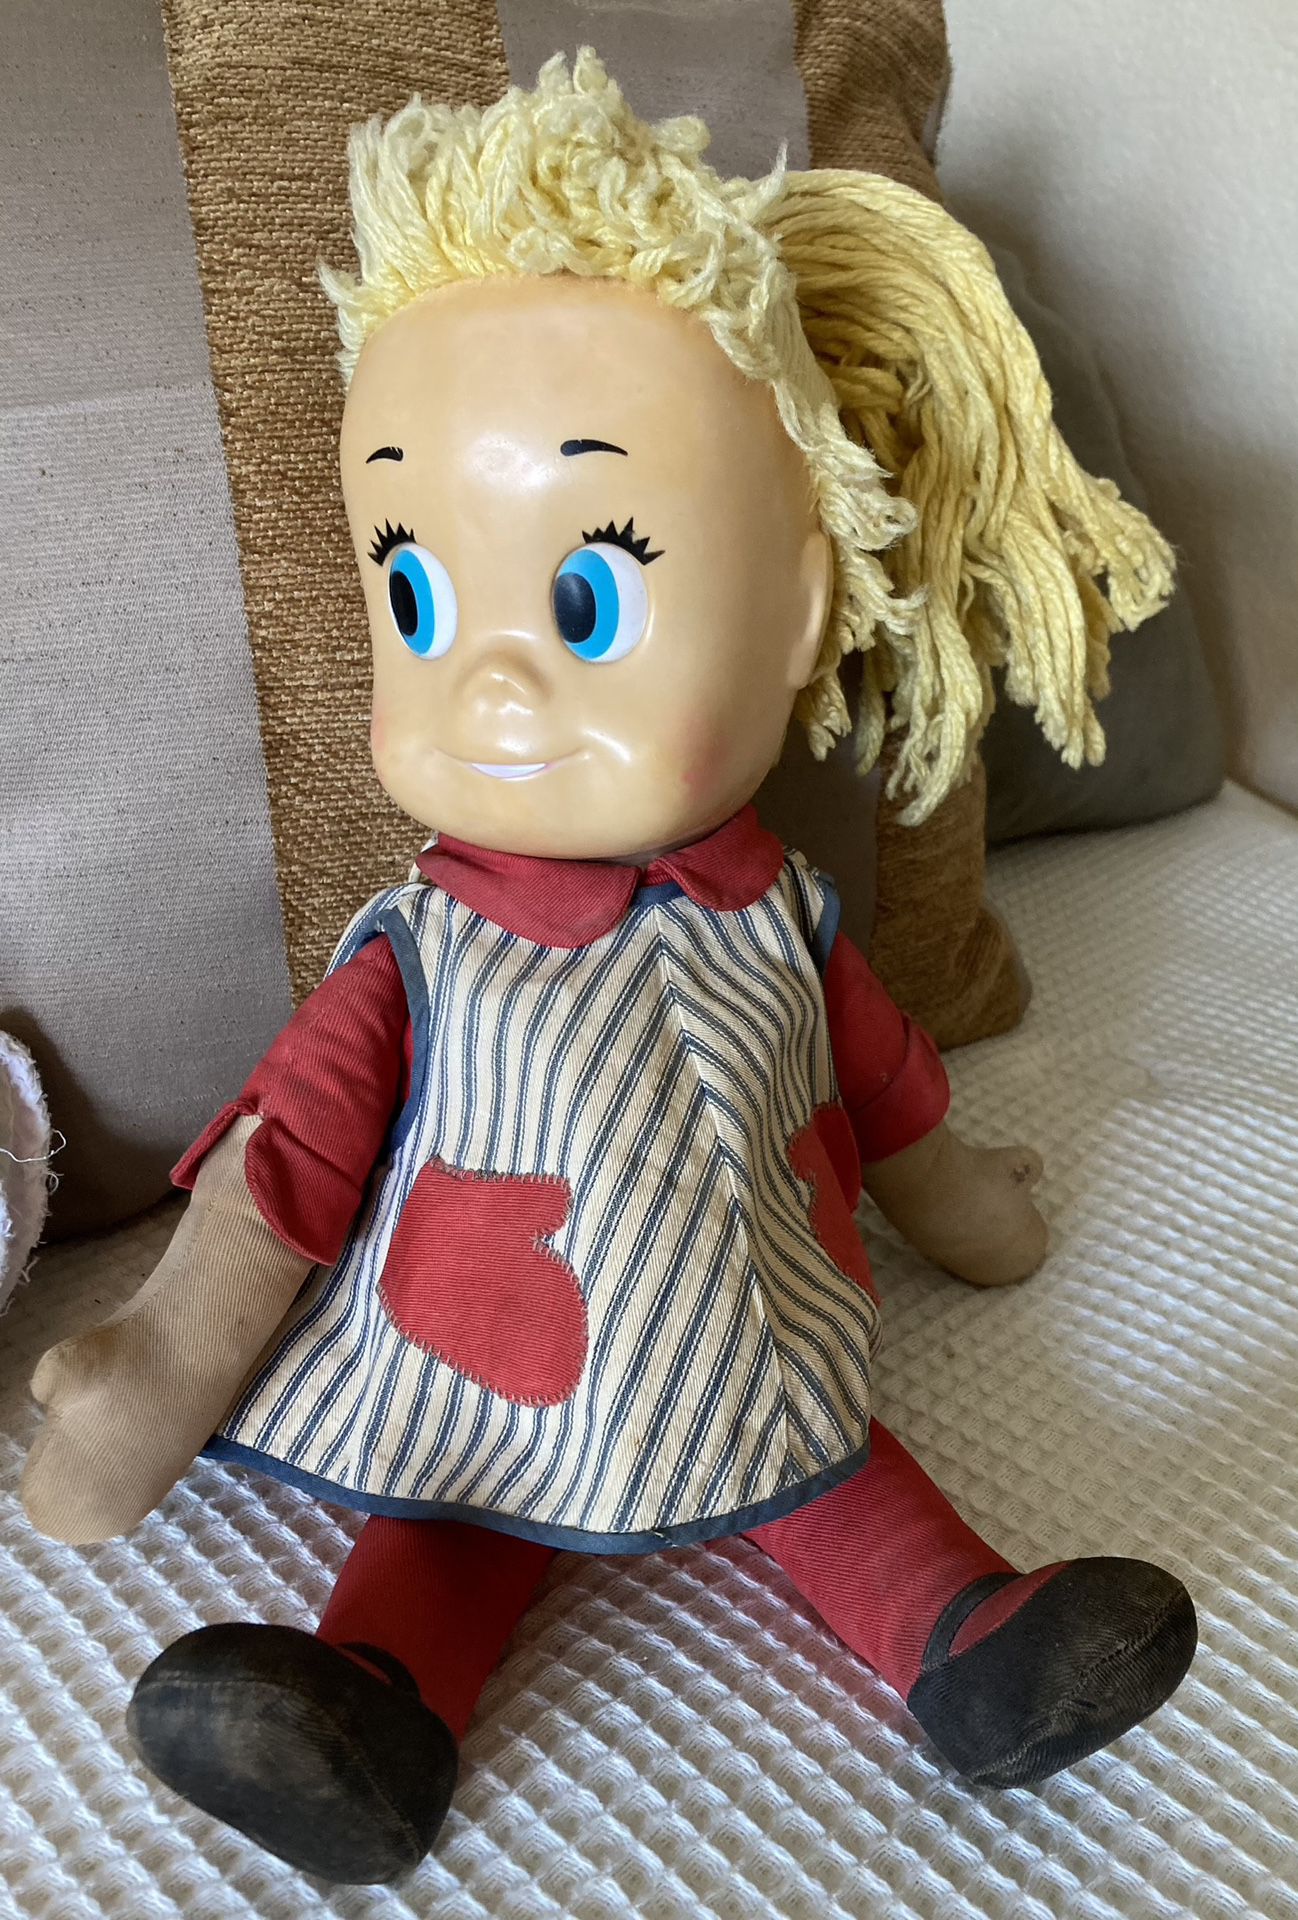 1961 Mattel Sister Belle the talking girl doll